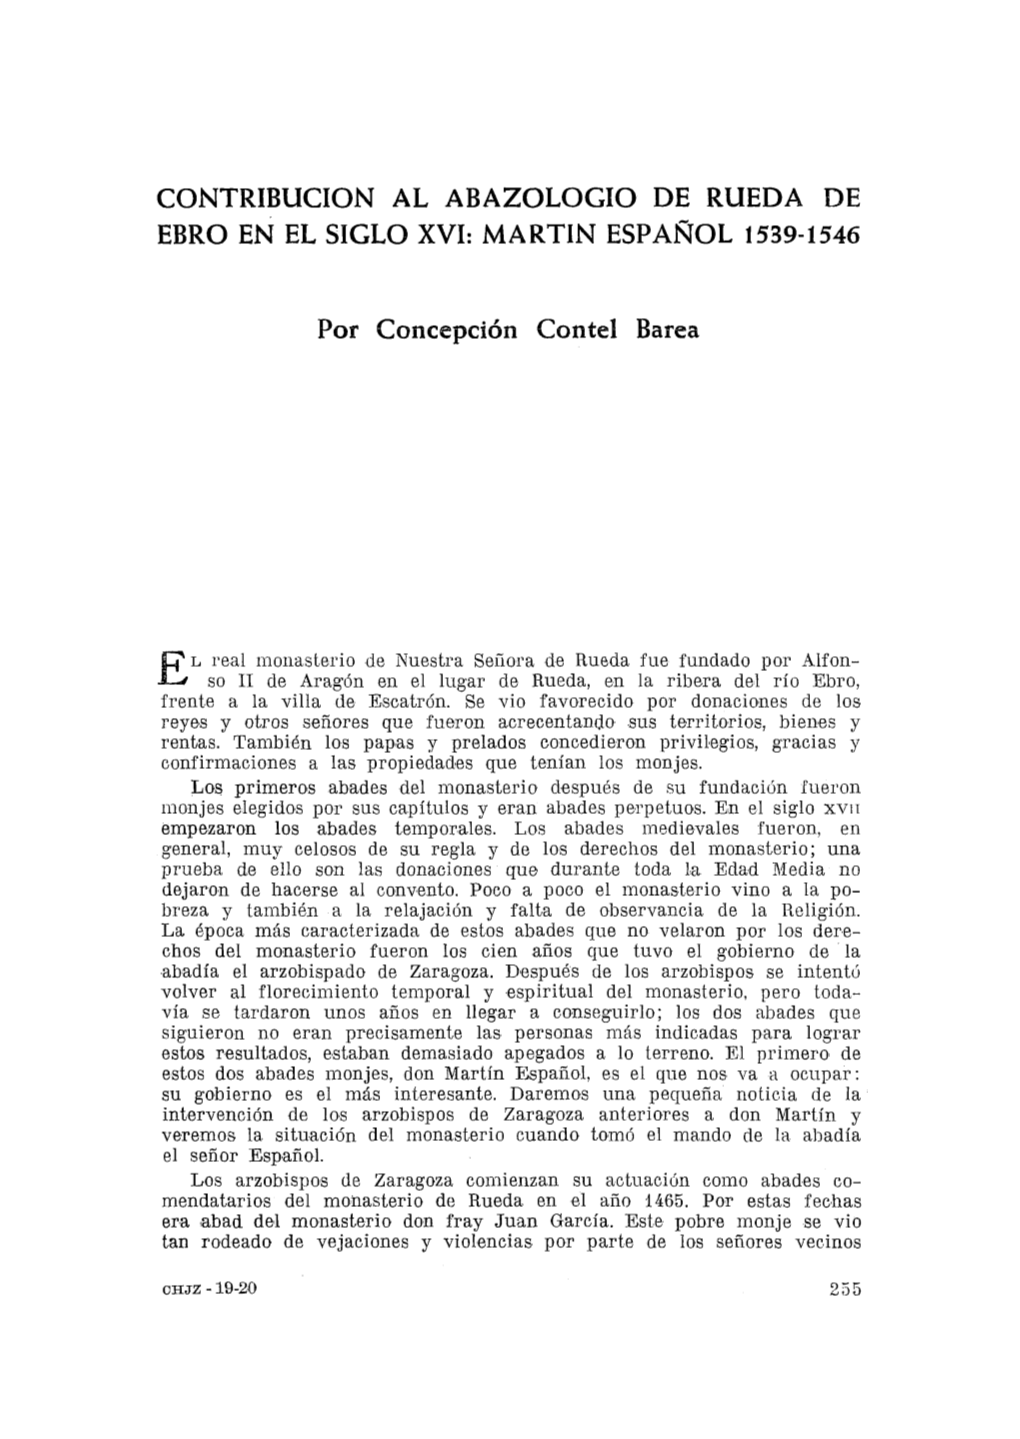 Cuadernos De Historia Jerónimo Zurita, 19-20